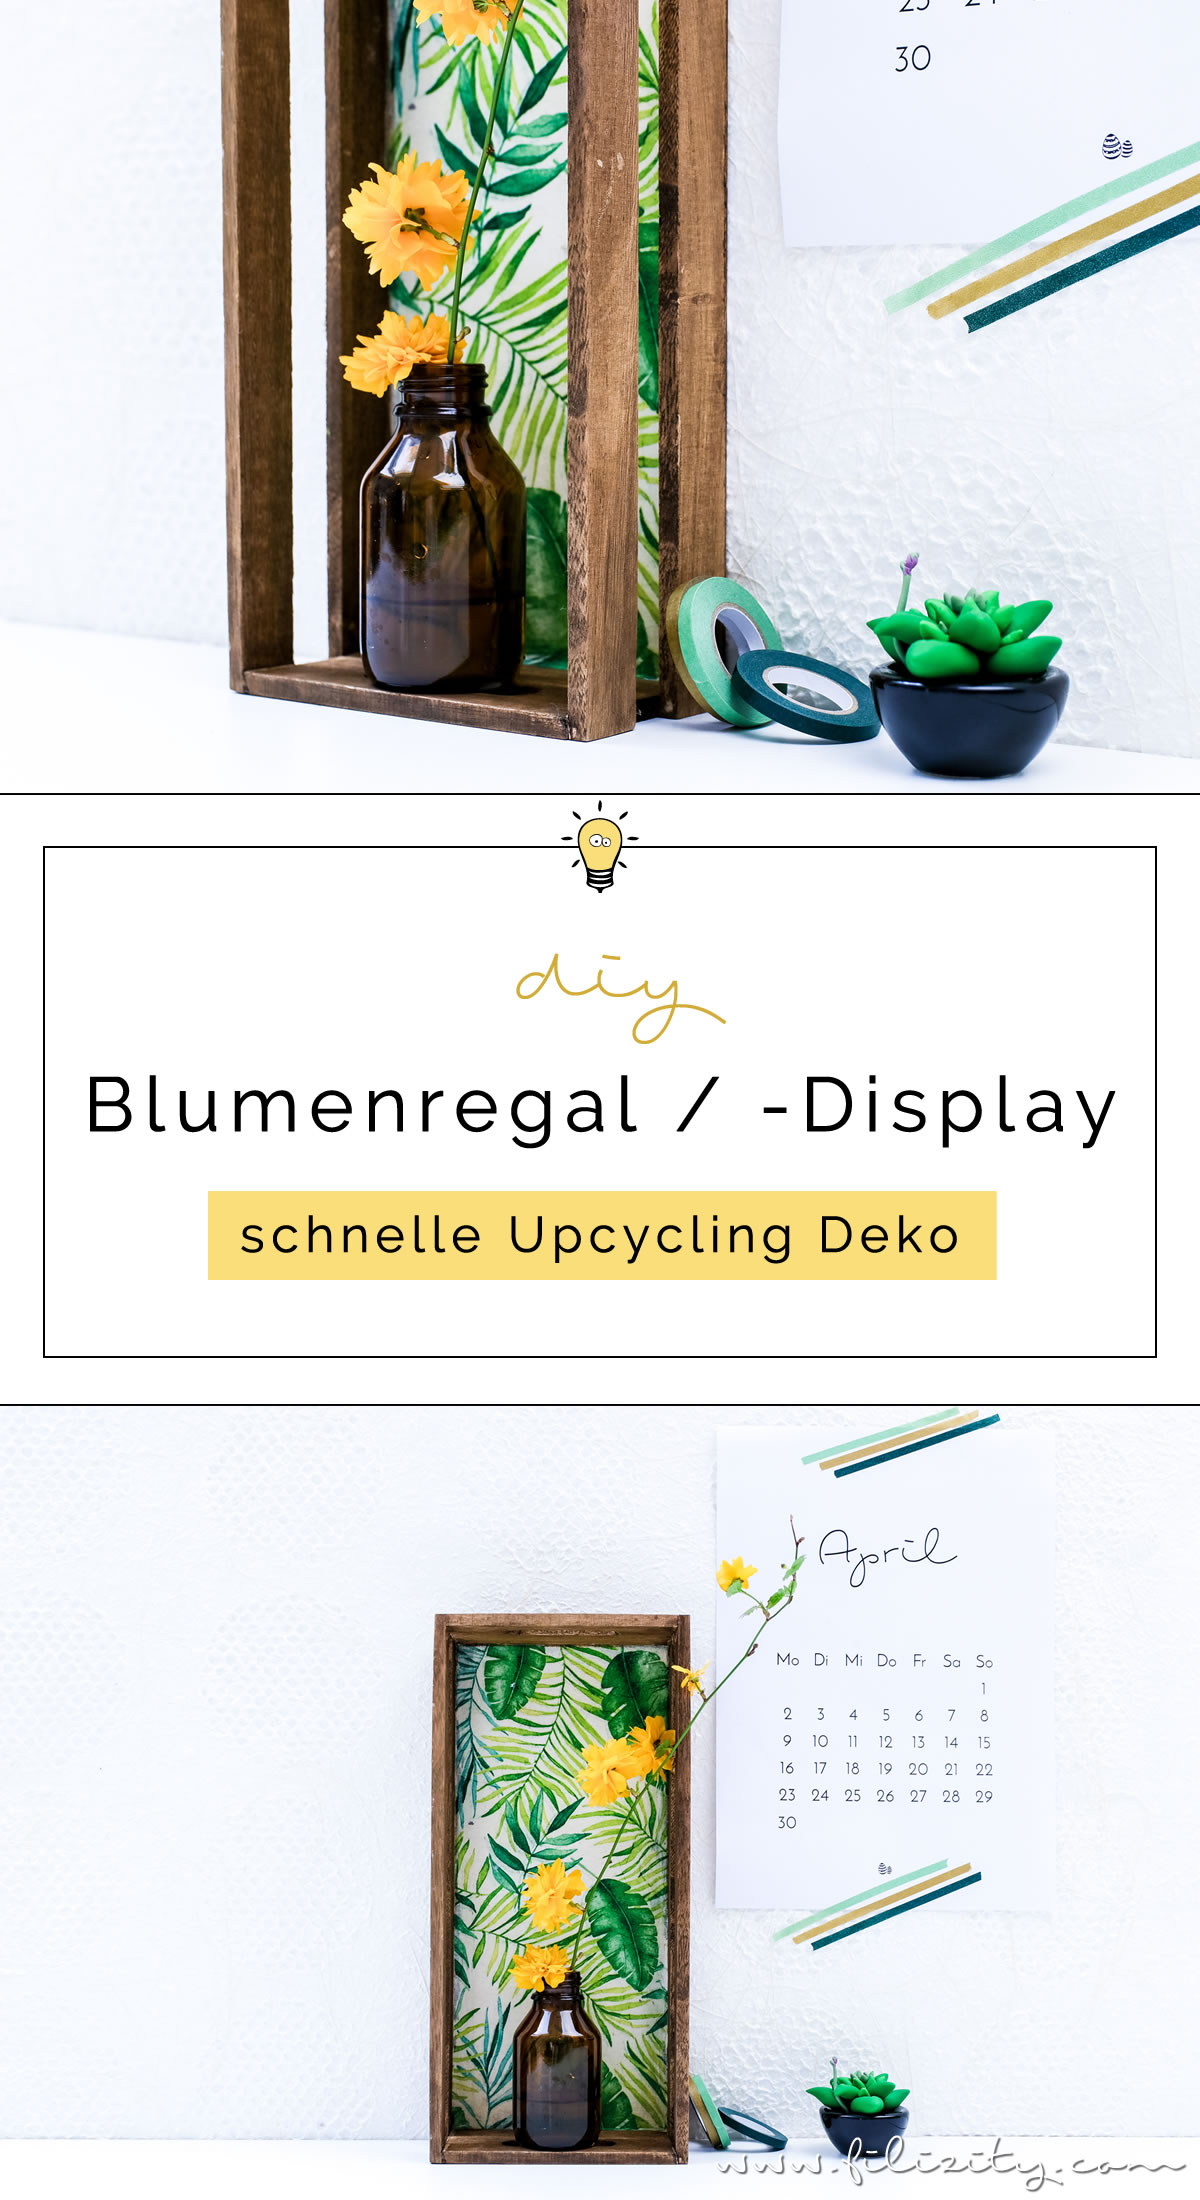 Schöne Upcycling-Idee: DIY Blumenregal / Blumendisplay aus einem Holztablett | Schöne Deko selber machen | Filizity.com | Interior- & DIY-Blog aus dem Rheinland #upcycling #recycling #urbanjungle